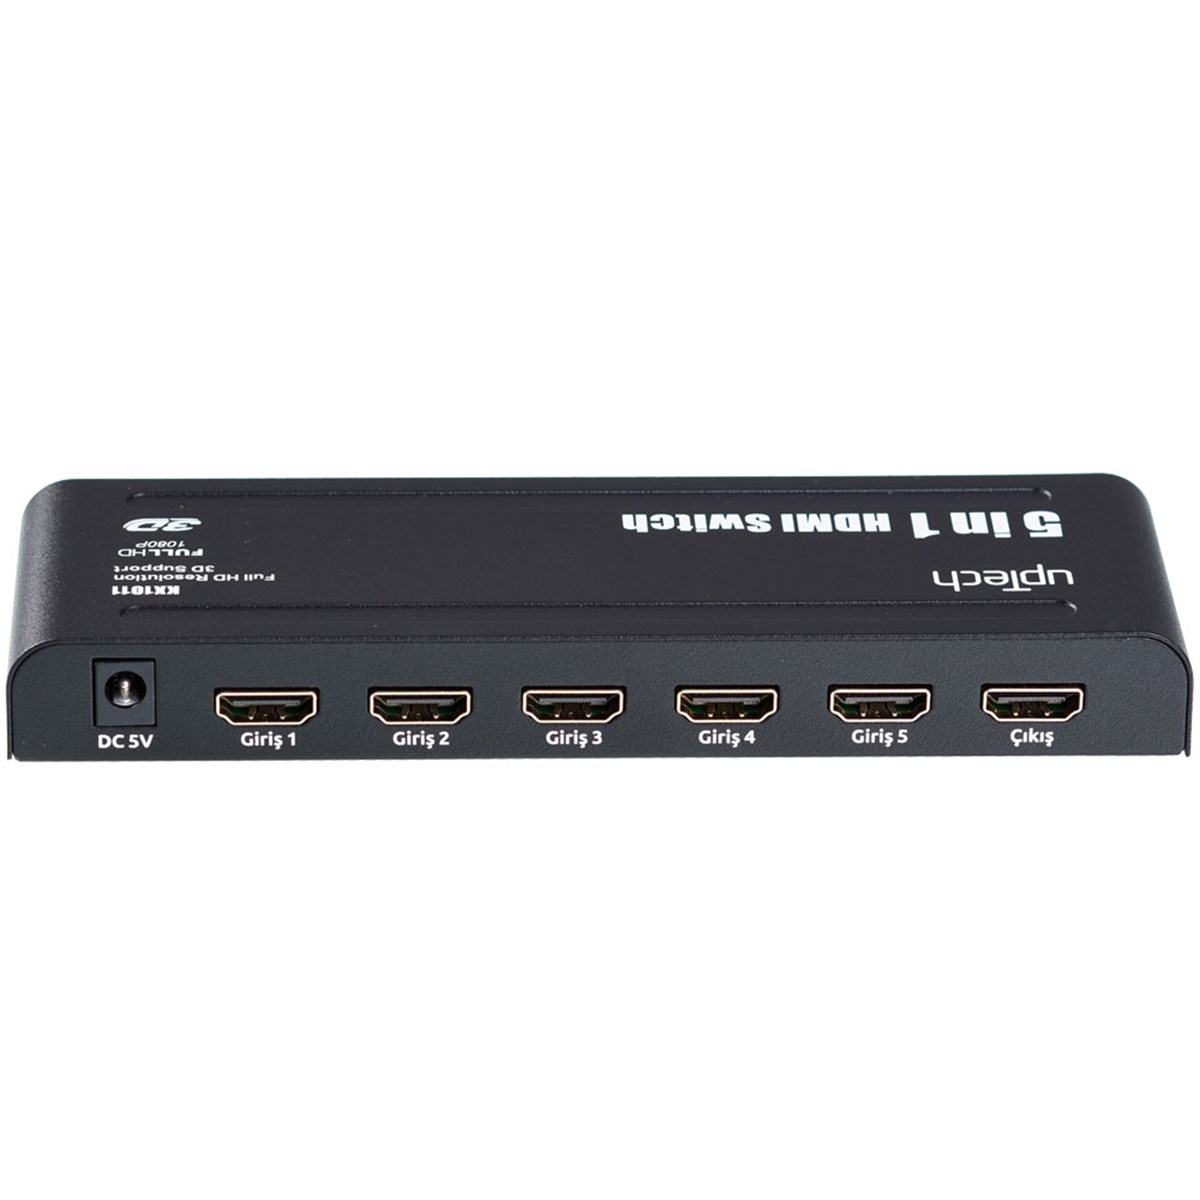 UPTECH Ultra HD - 2160P - 3D - 5 Giriş 1 Çıkış HDMI Switch ( Birleştirici )  KX-1011